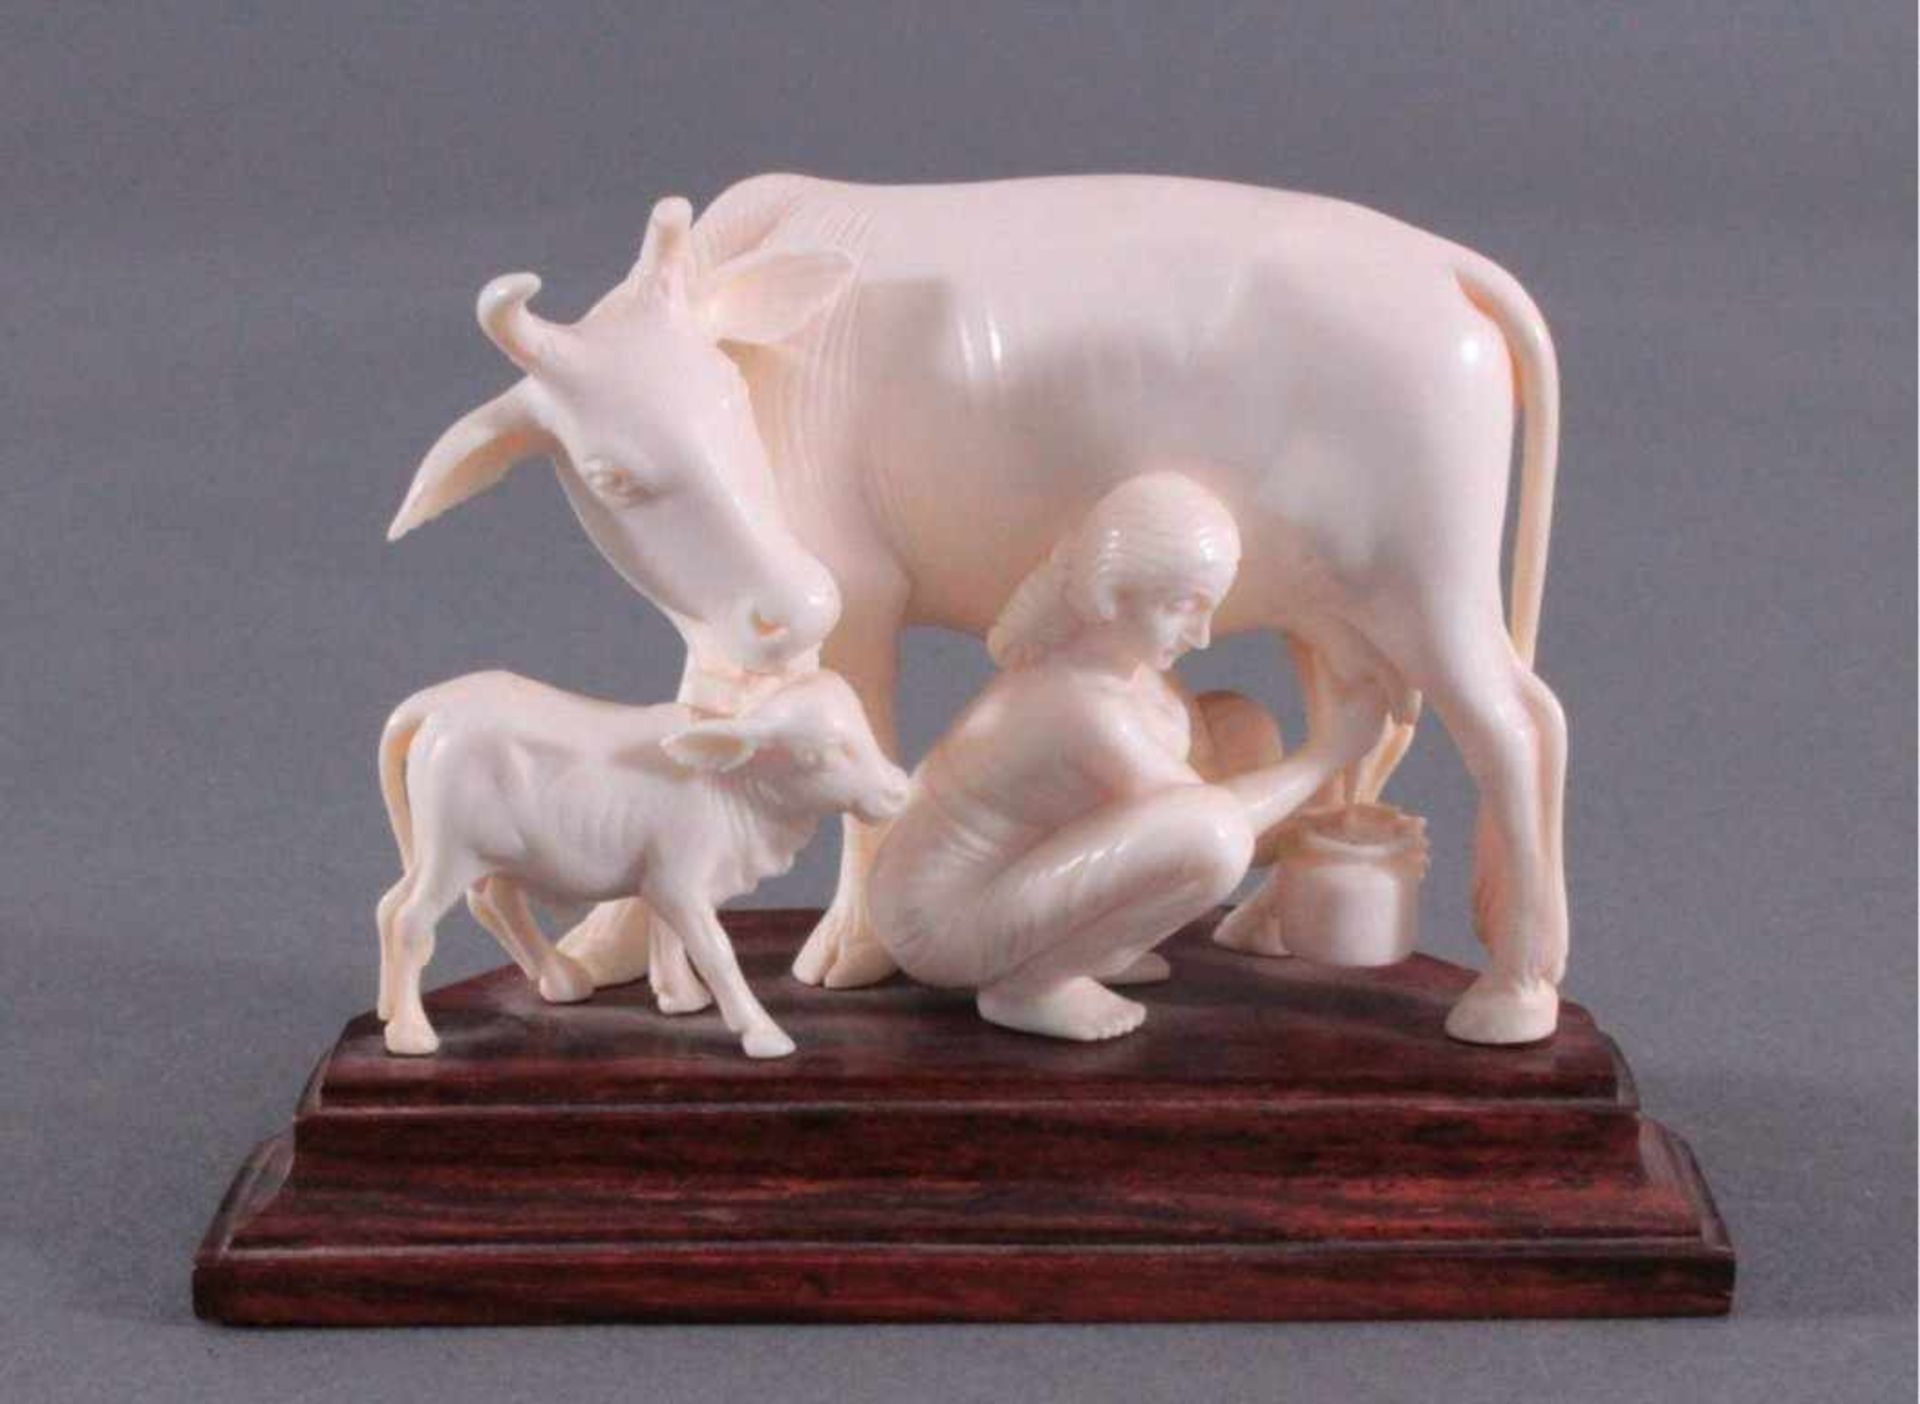 Elfenbeinfigur, Kuh mit Kalb und Bäuerin beim melkenvollplastisch geschnitzt, ca. 8 x 11 x 5,5 cm.